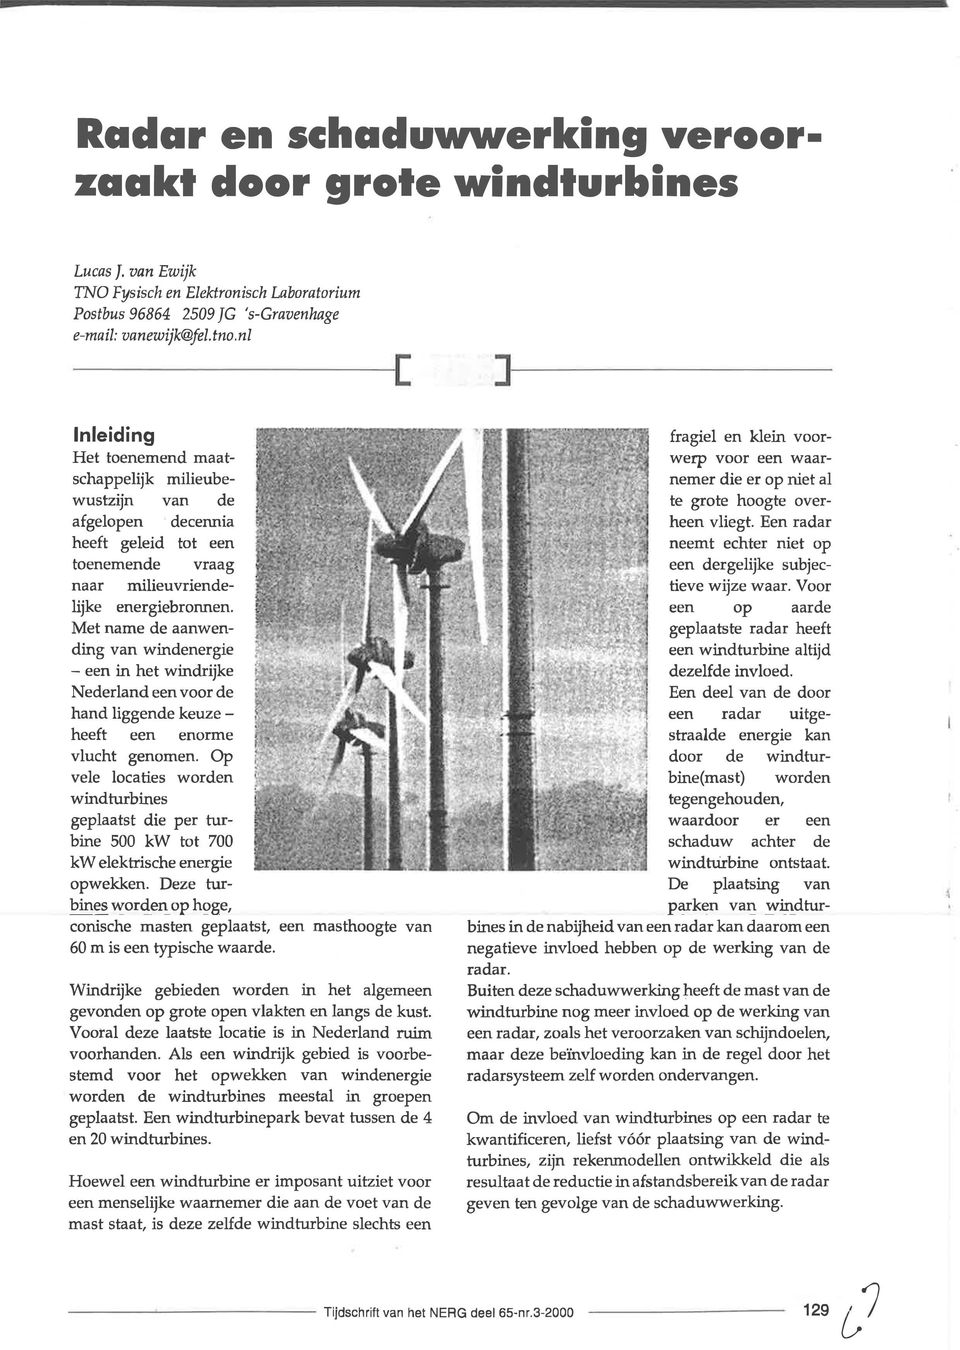 Met name de aanwending van windenergie - een in het windrijke Nederland eenvoor de hand liggende keuze - heeft een enorme vlucht genomen.